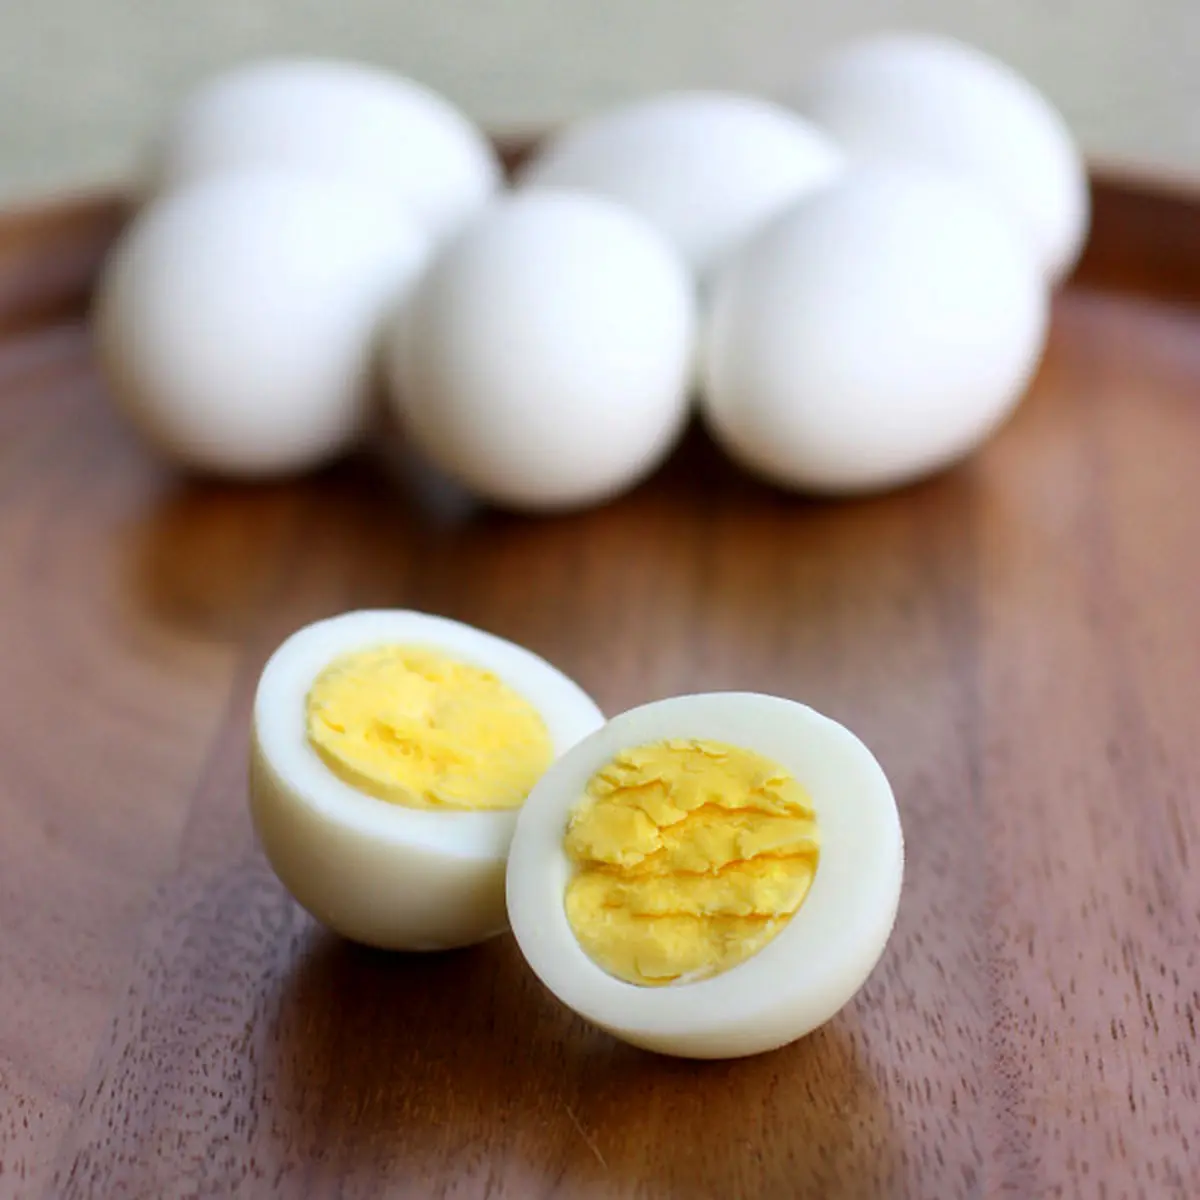  صحیح ترین روش مصرف تخم مرغ!